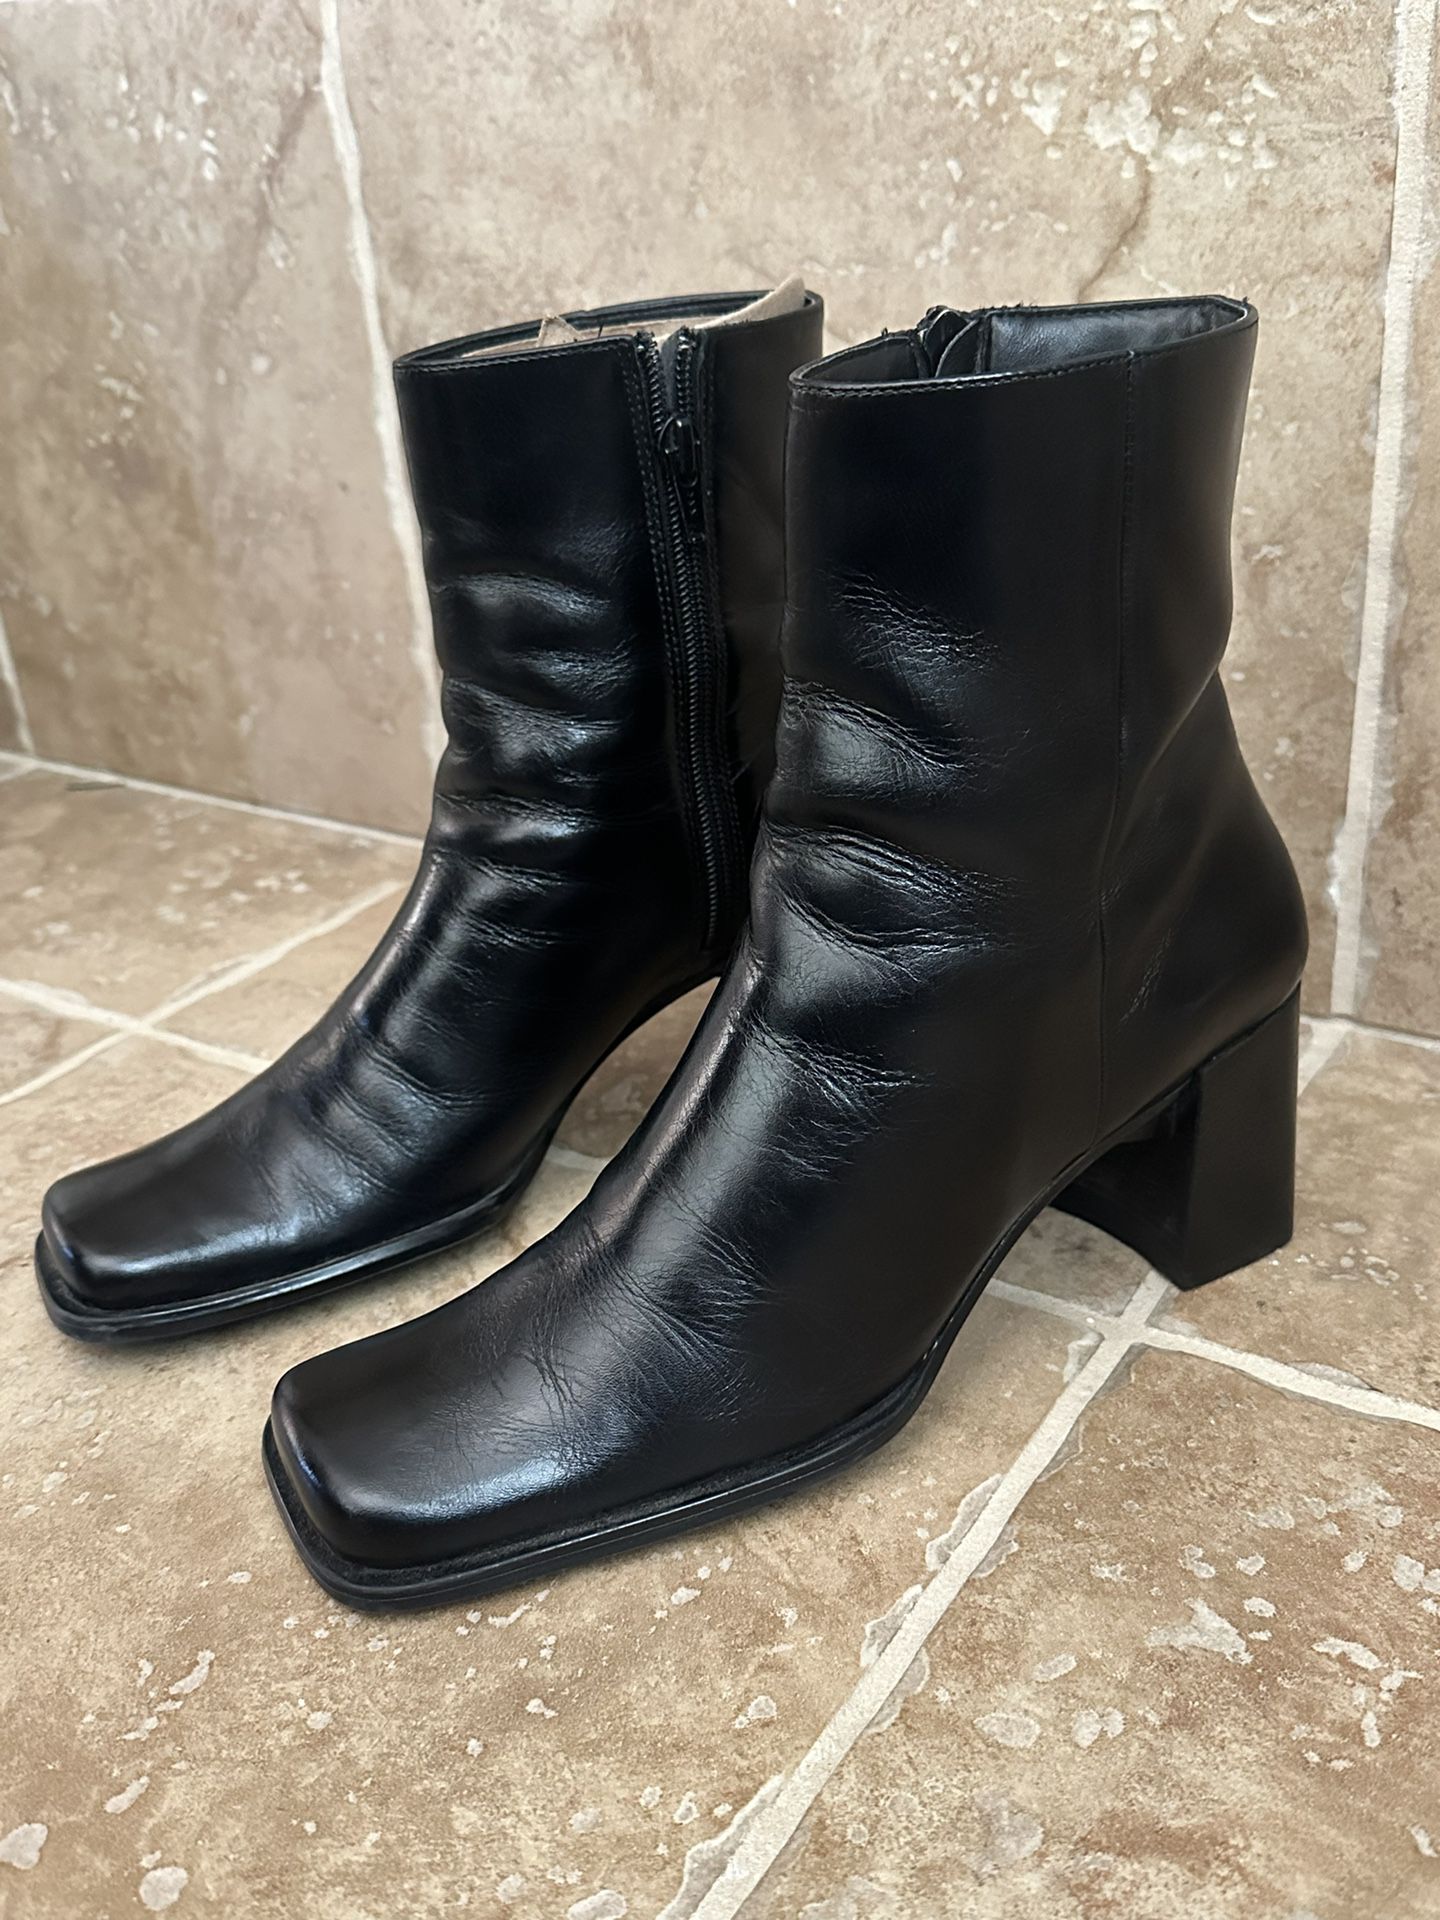 Nine West Women's Black Leather Dress Boots (READ SIZE BELOW)